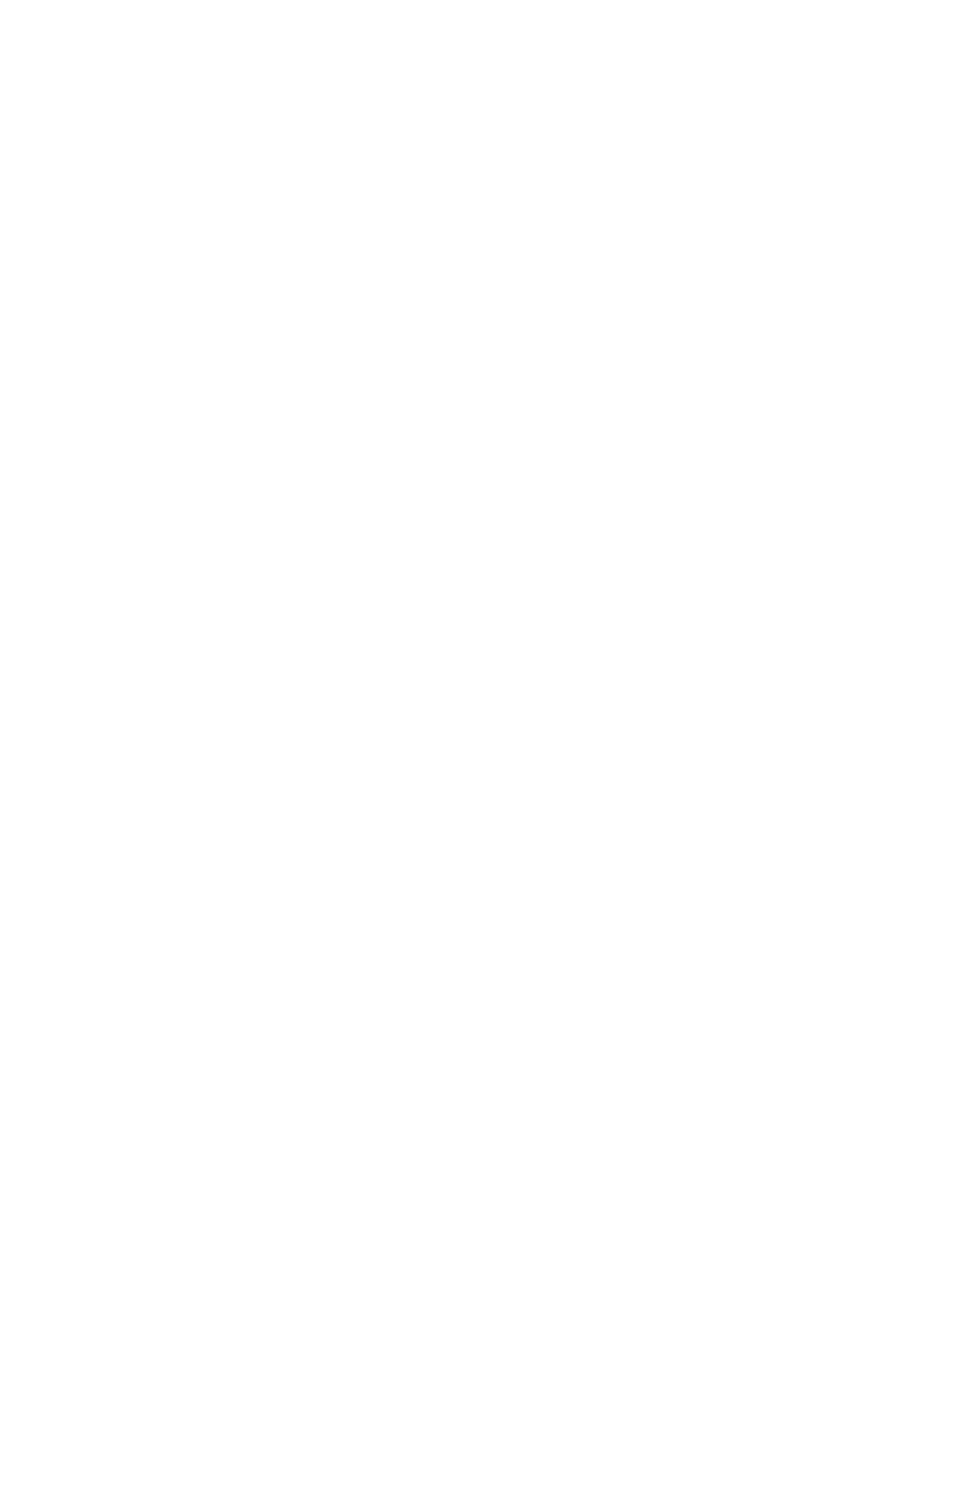 Rottneros logo pour fonds sombres (PNG transparent)